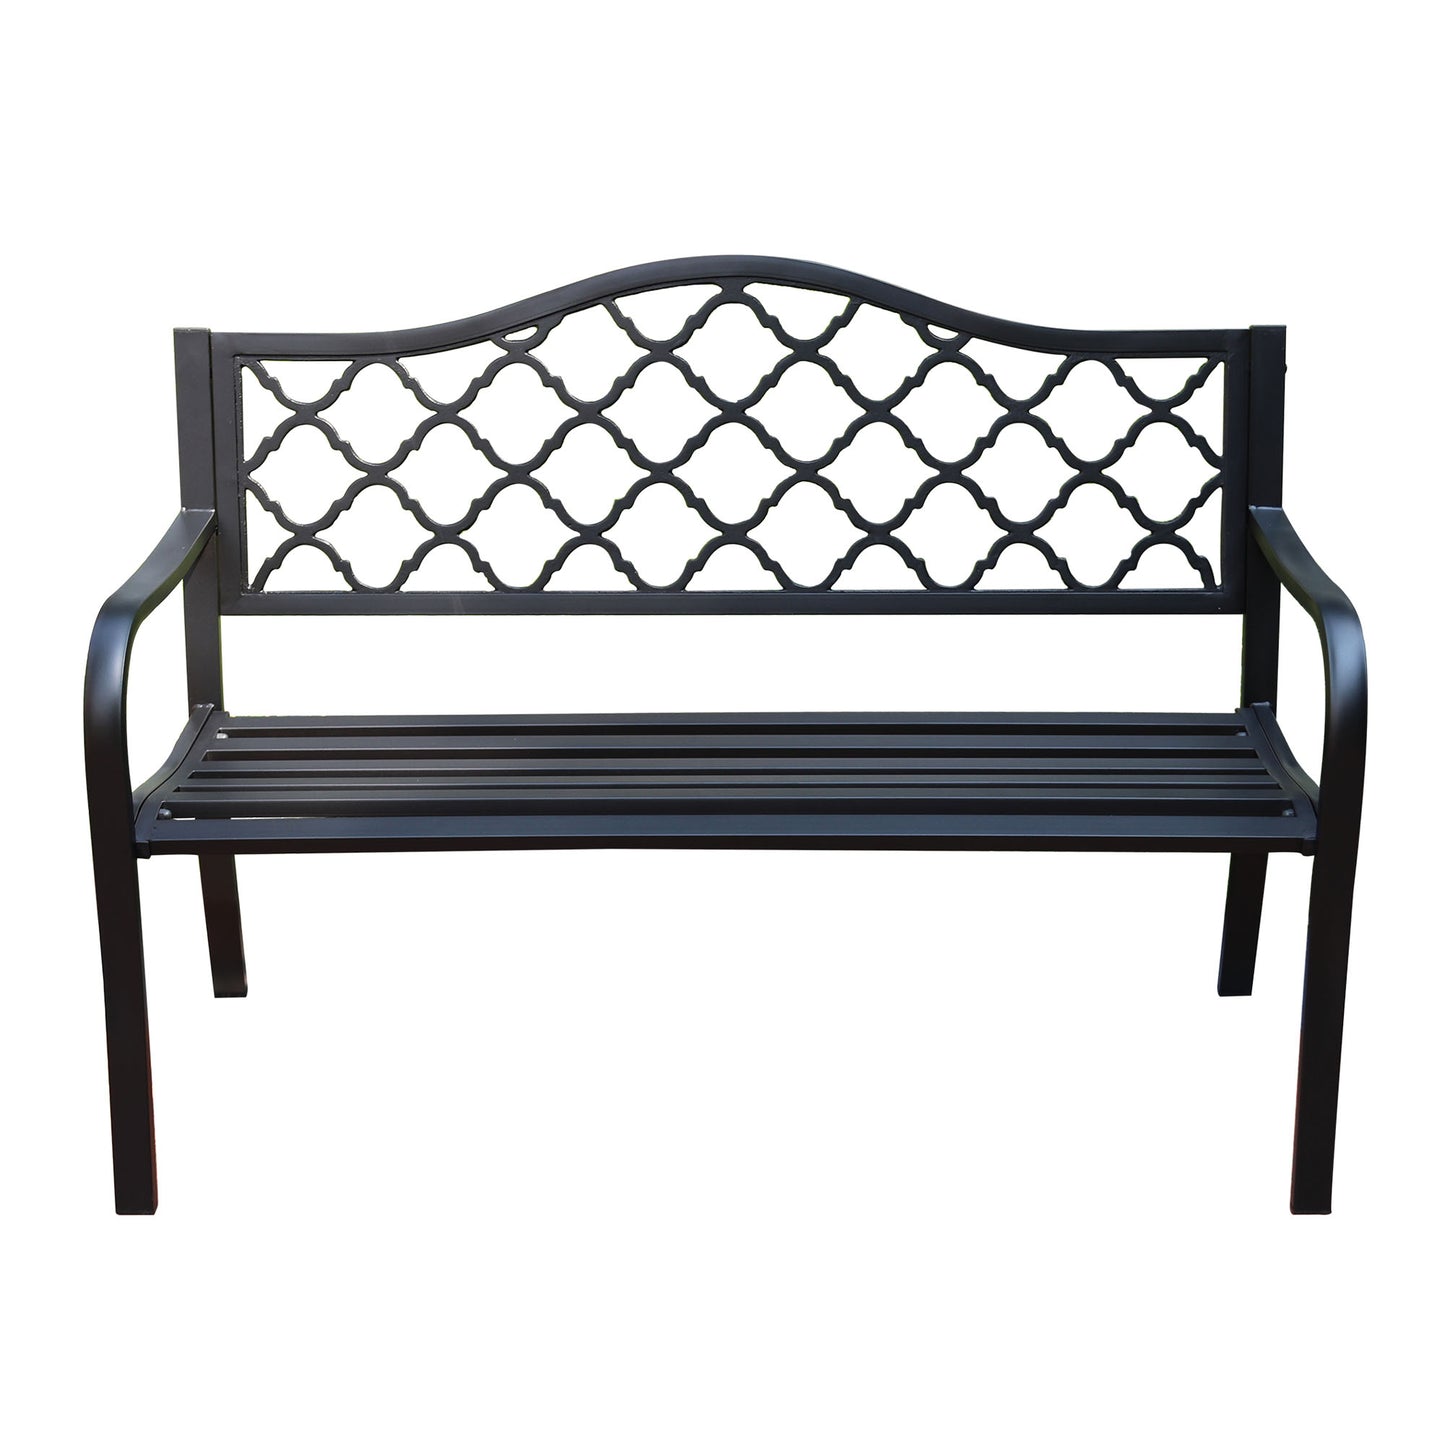 50 in. Steel Designer Outdoor Garden Bench - Black